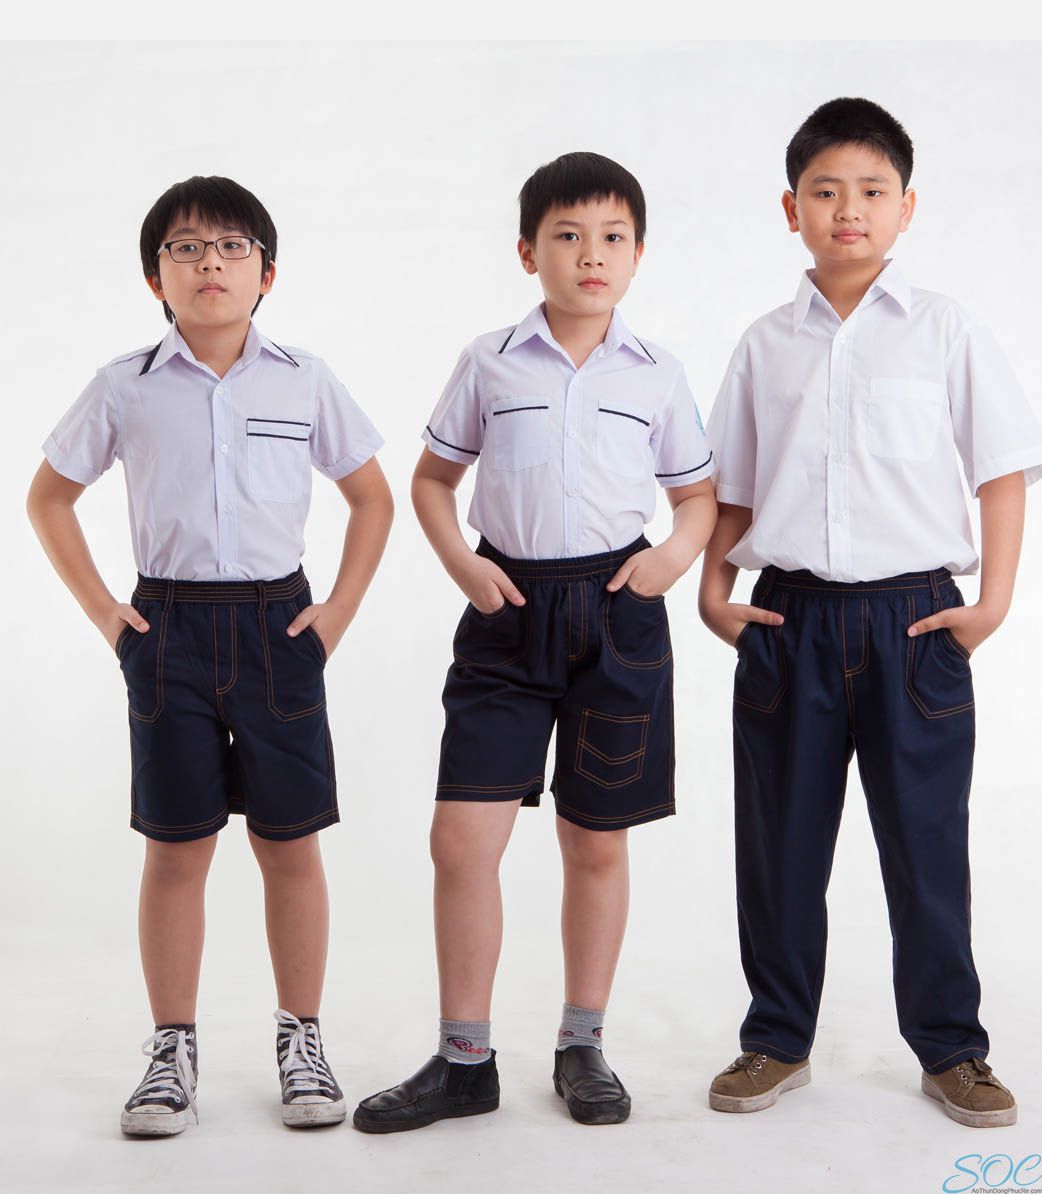 Vì sao học sinh nên mặc đồng phục?